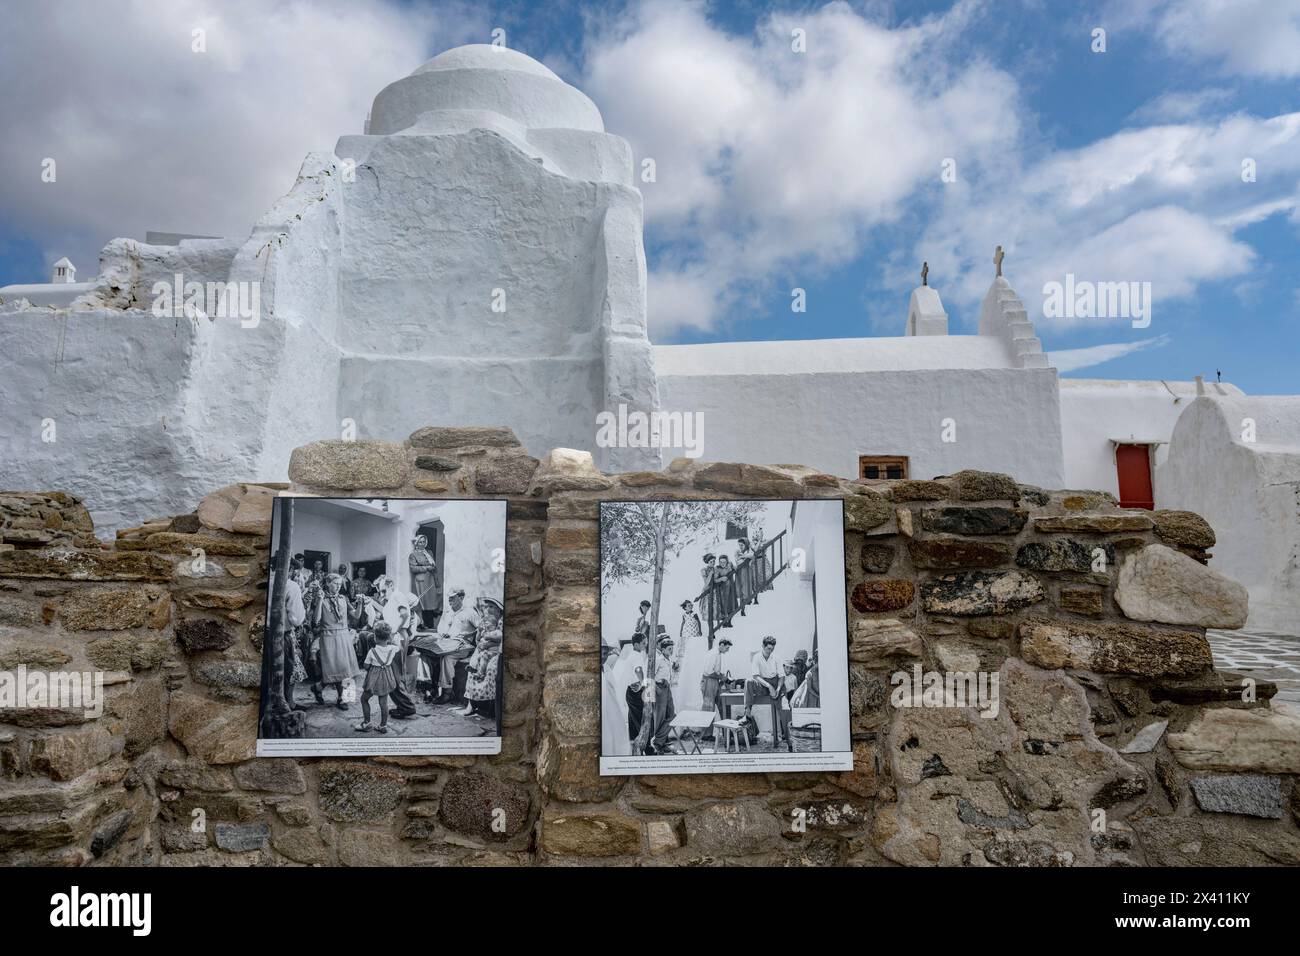 Fotografie storiche in bianco e nero montate su un muro di pietra a Mykonos, con una chiesa bianca sullo sfondo; Mykonos, Egeo meridionale, Grecia Foto Stock